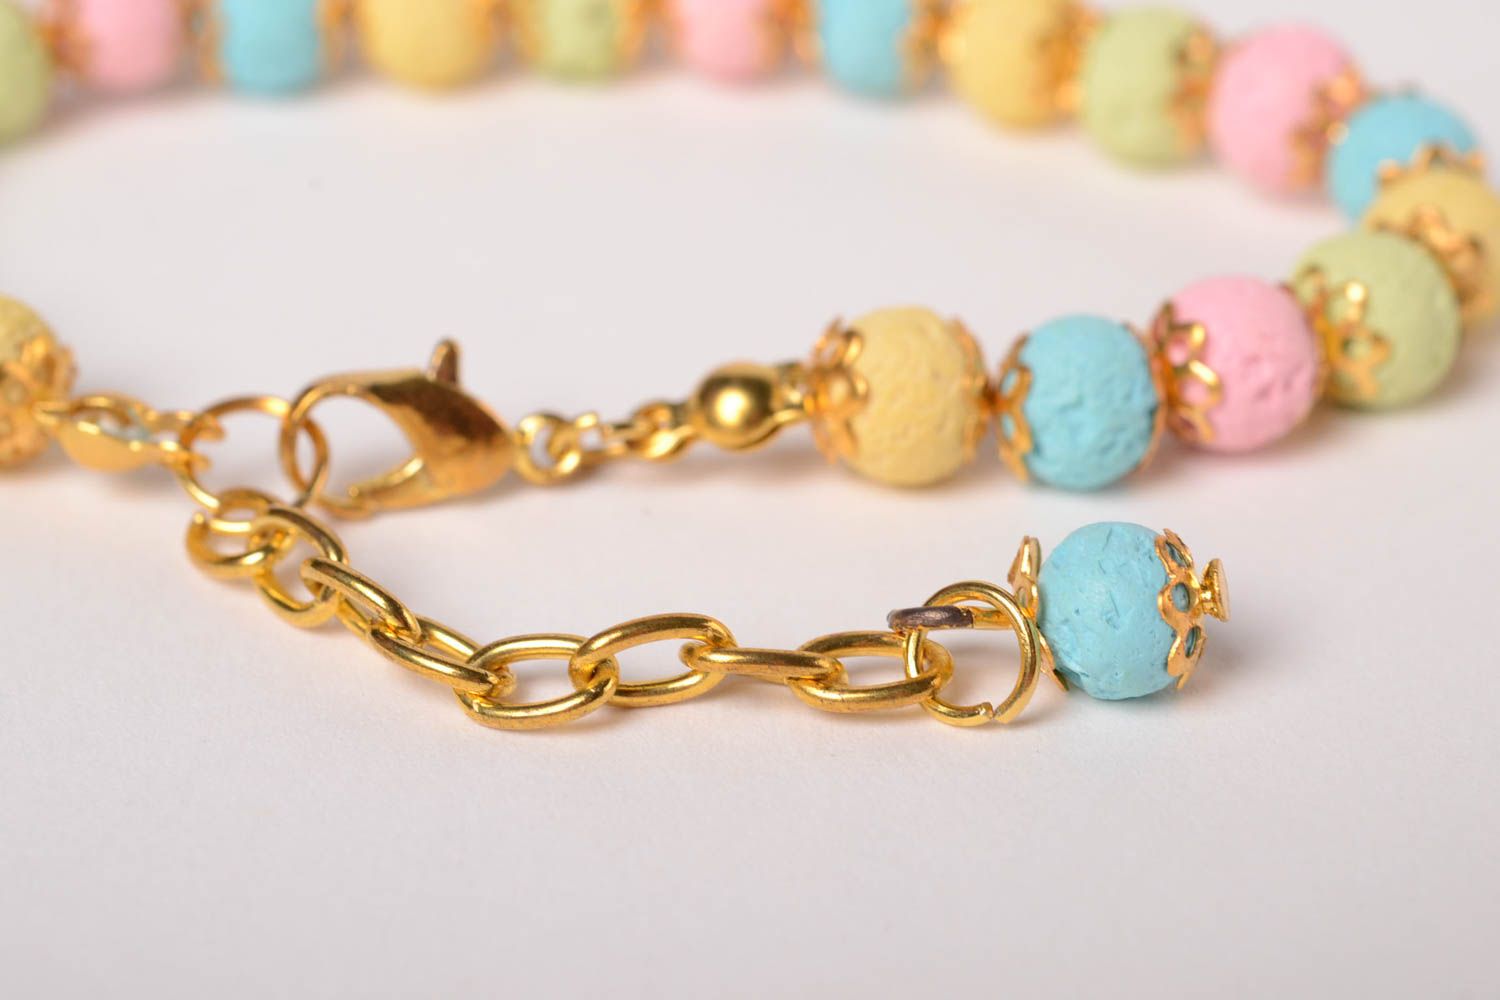 Homemade jewelry designer bracelet bead bracelets for women gifts for girls photo 5